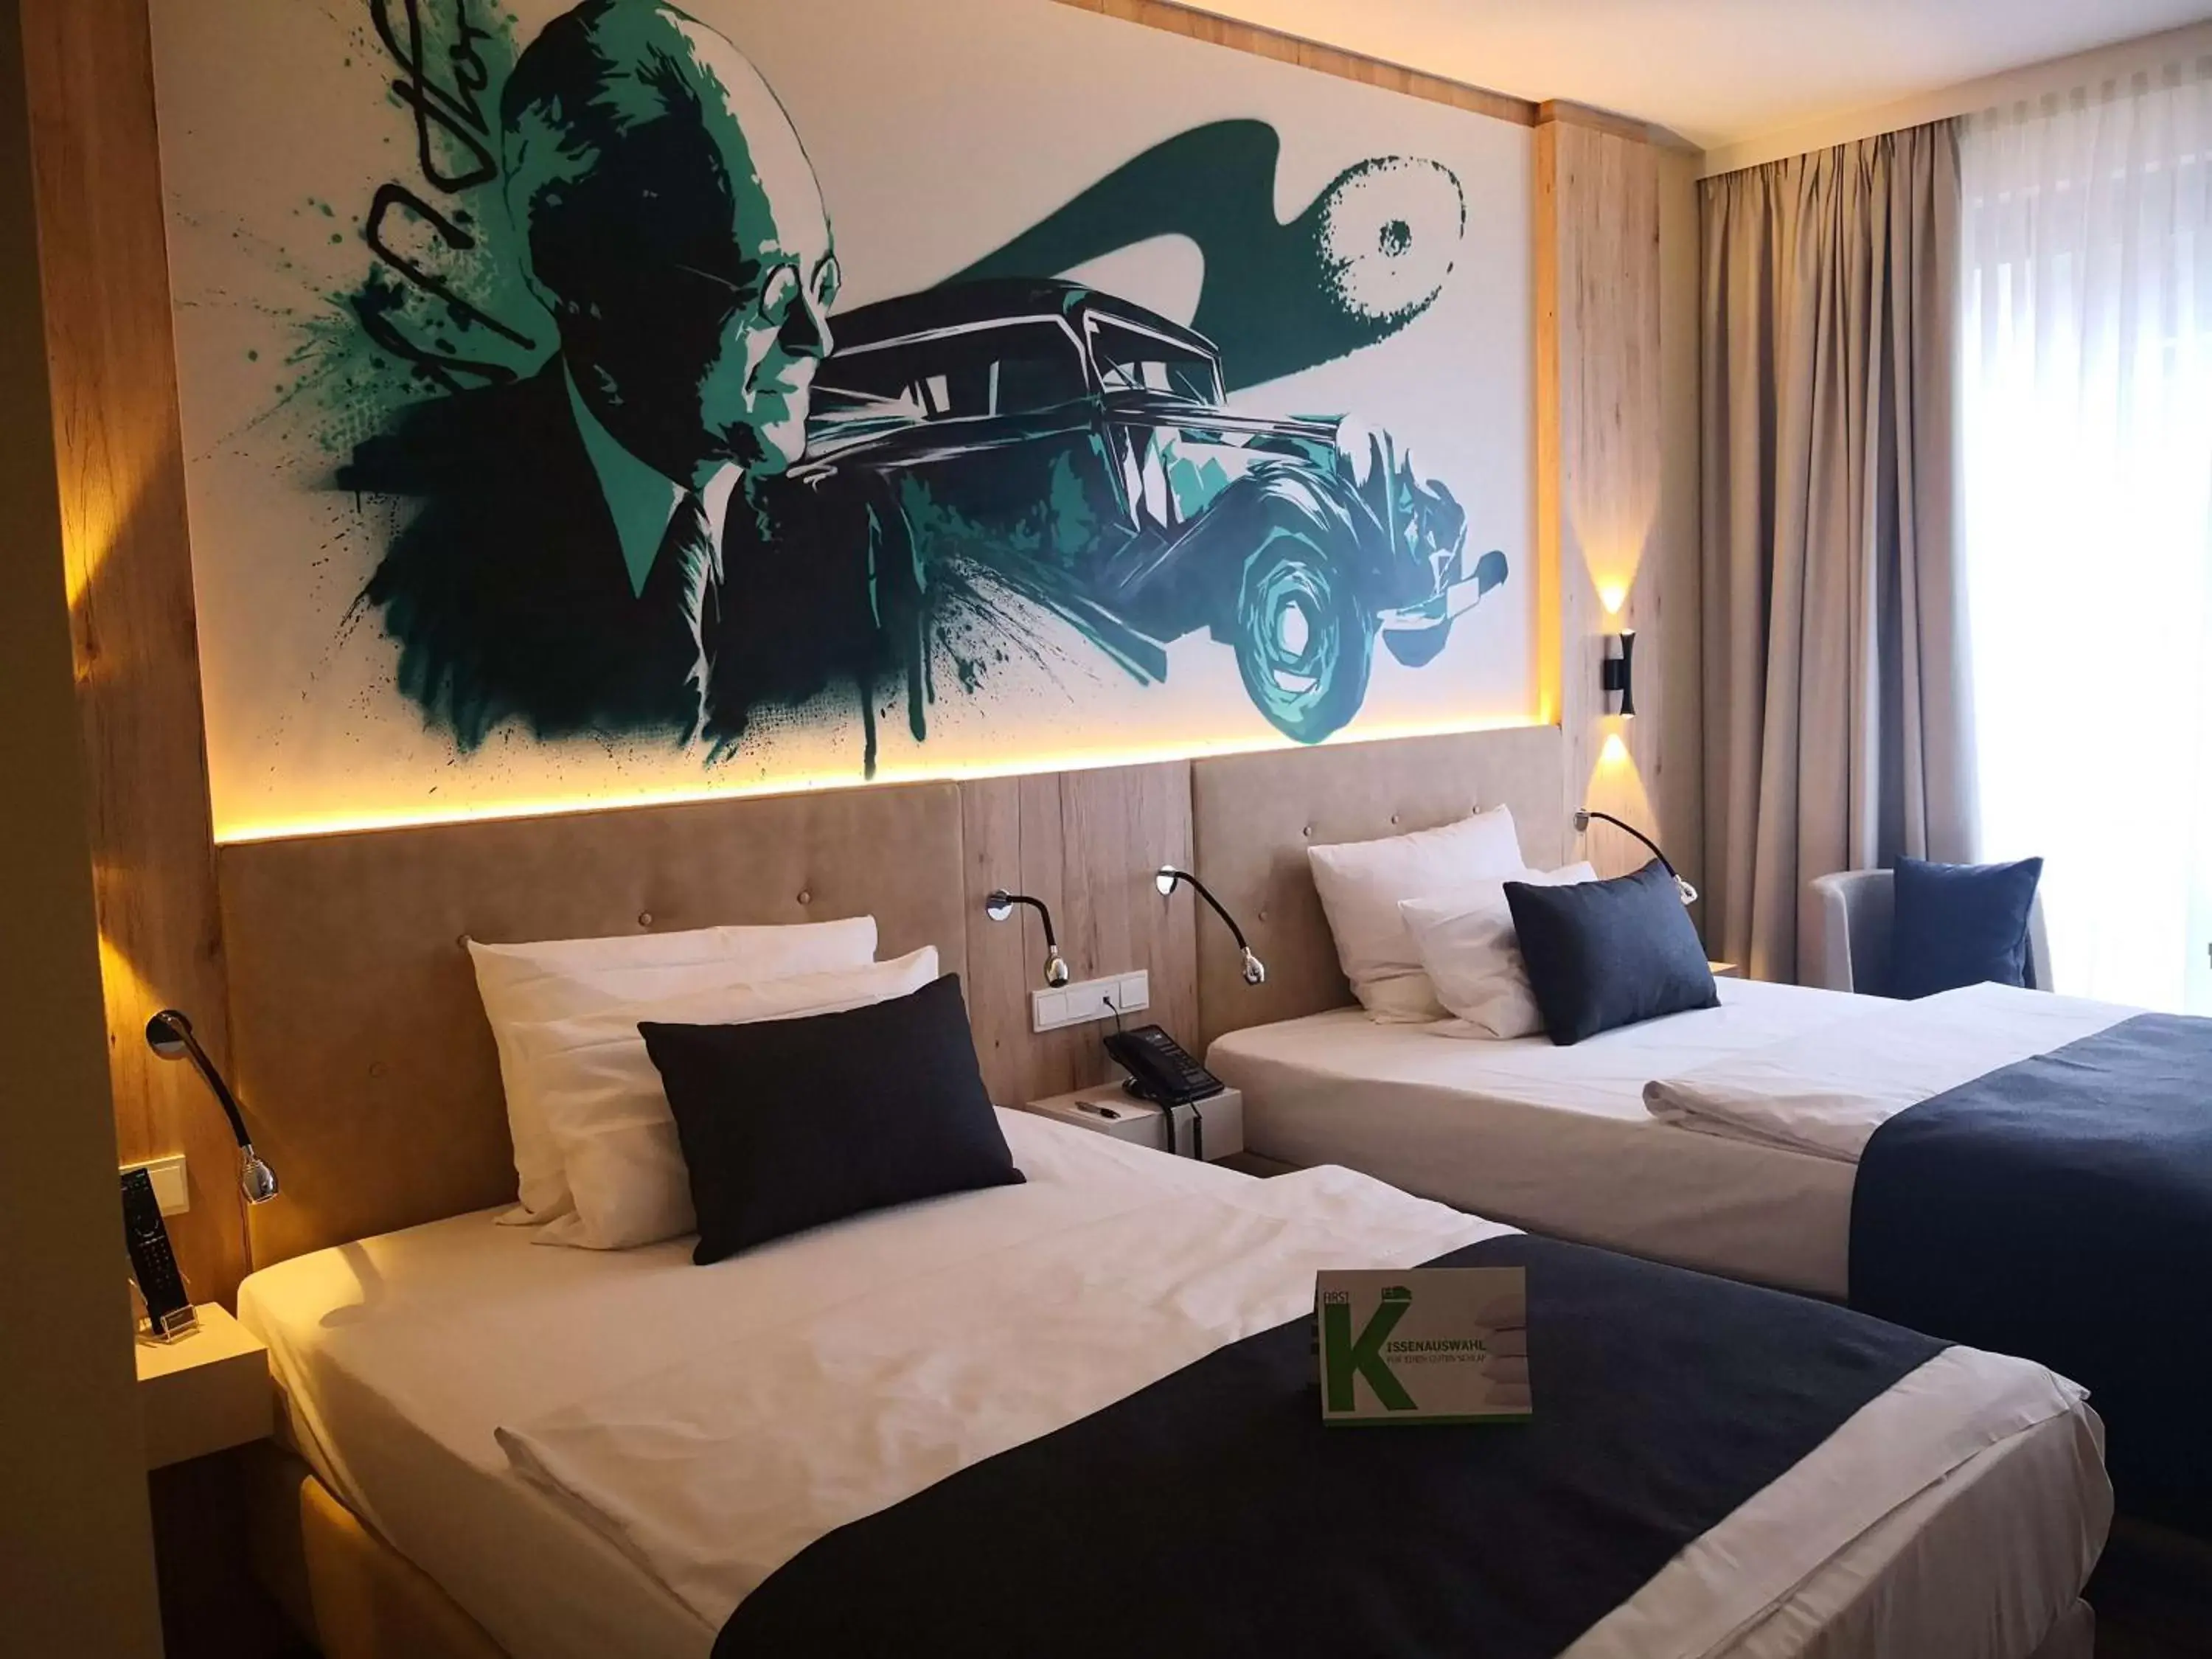 Bedroom, Bed in First Inn Hotel Zwickau